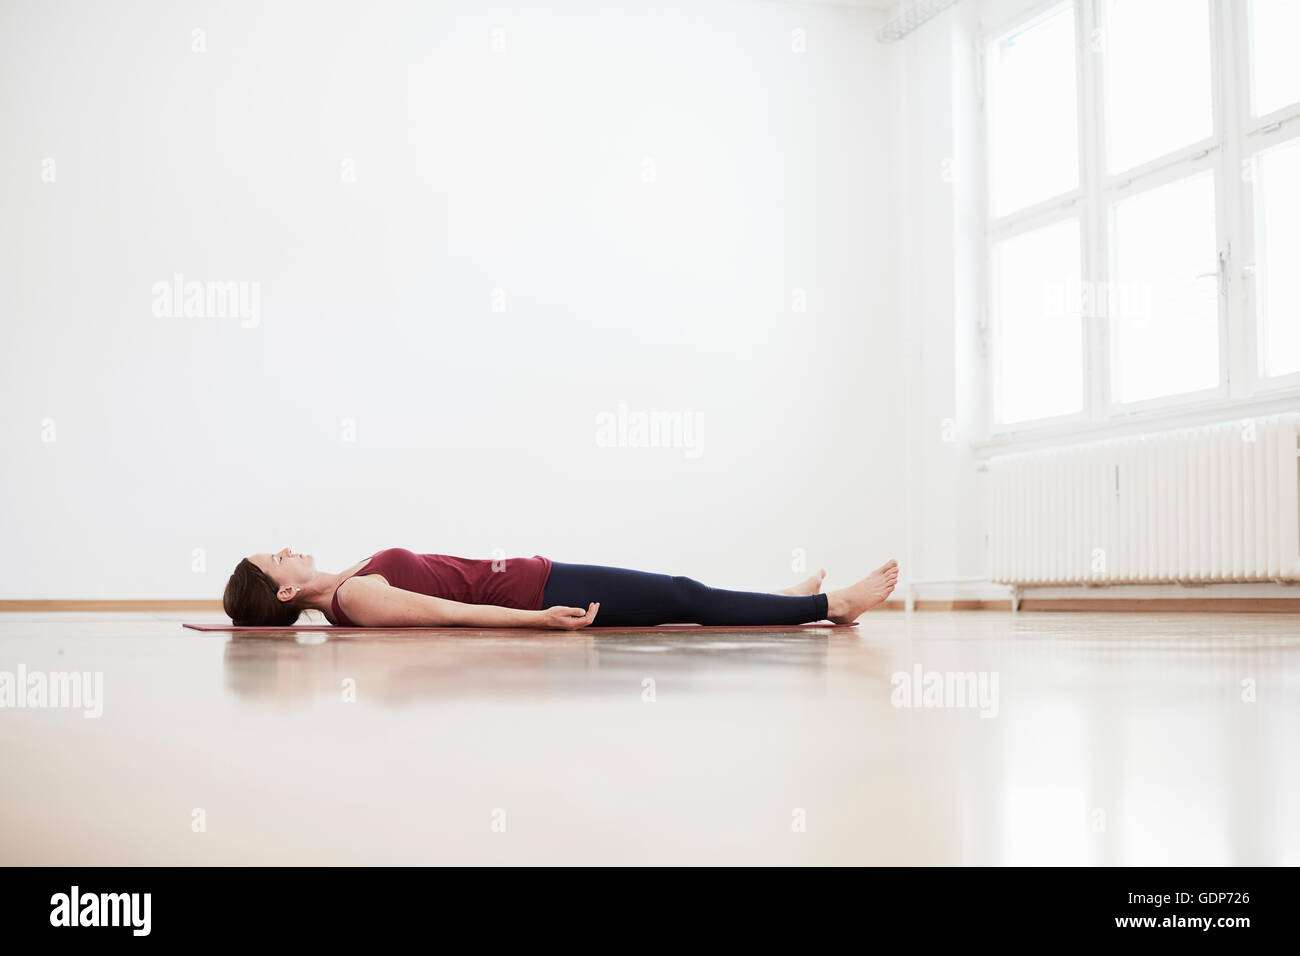 Woman in exercise studio lying on back on floor Stock Photo